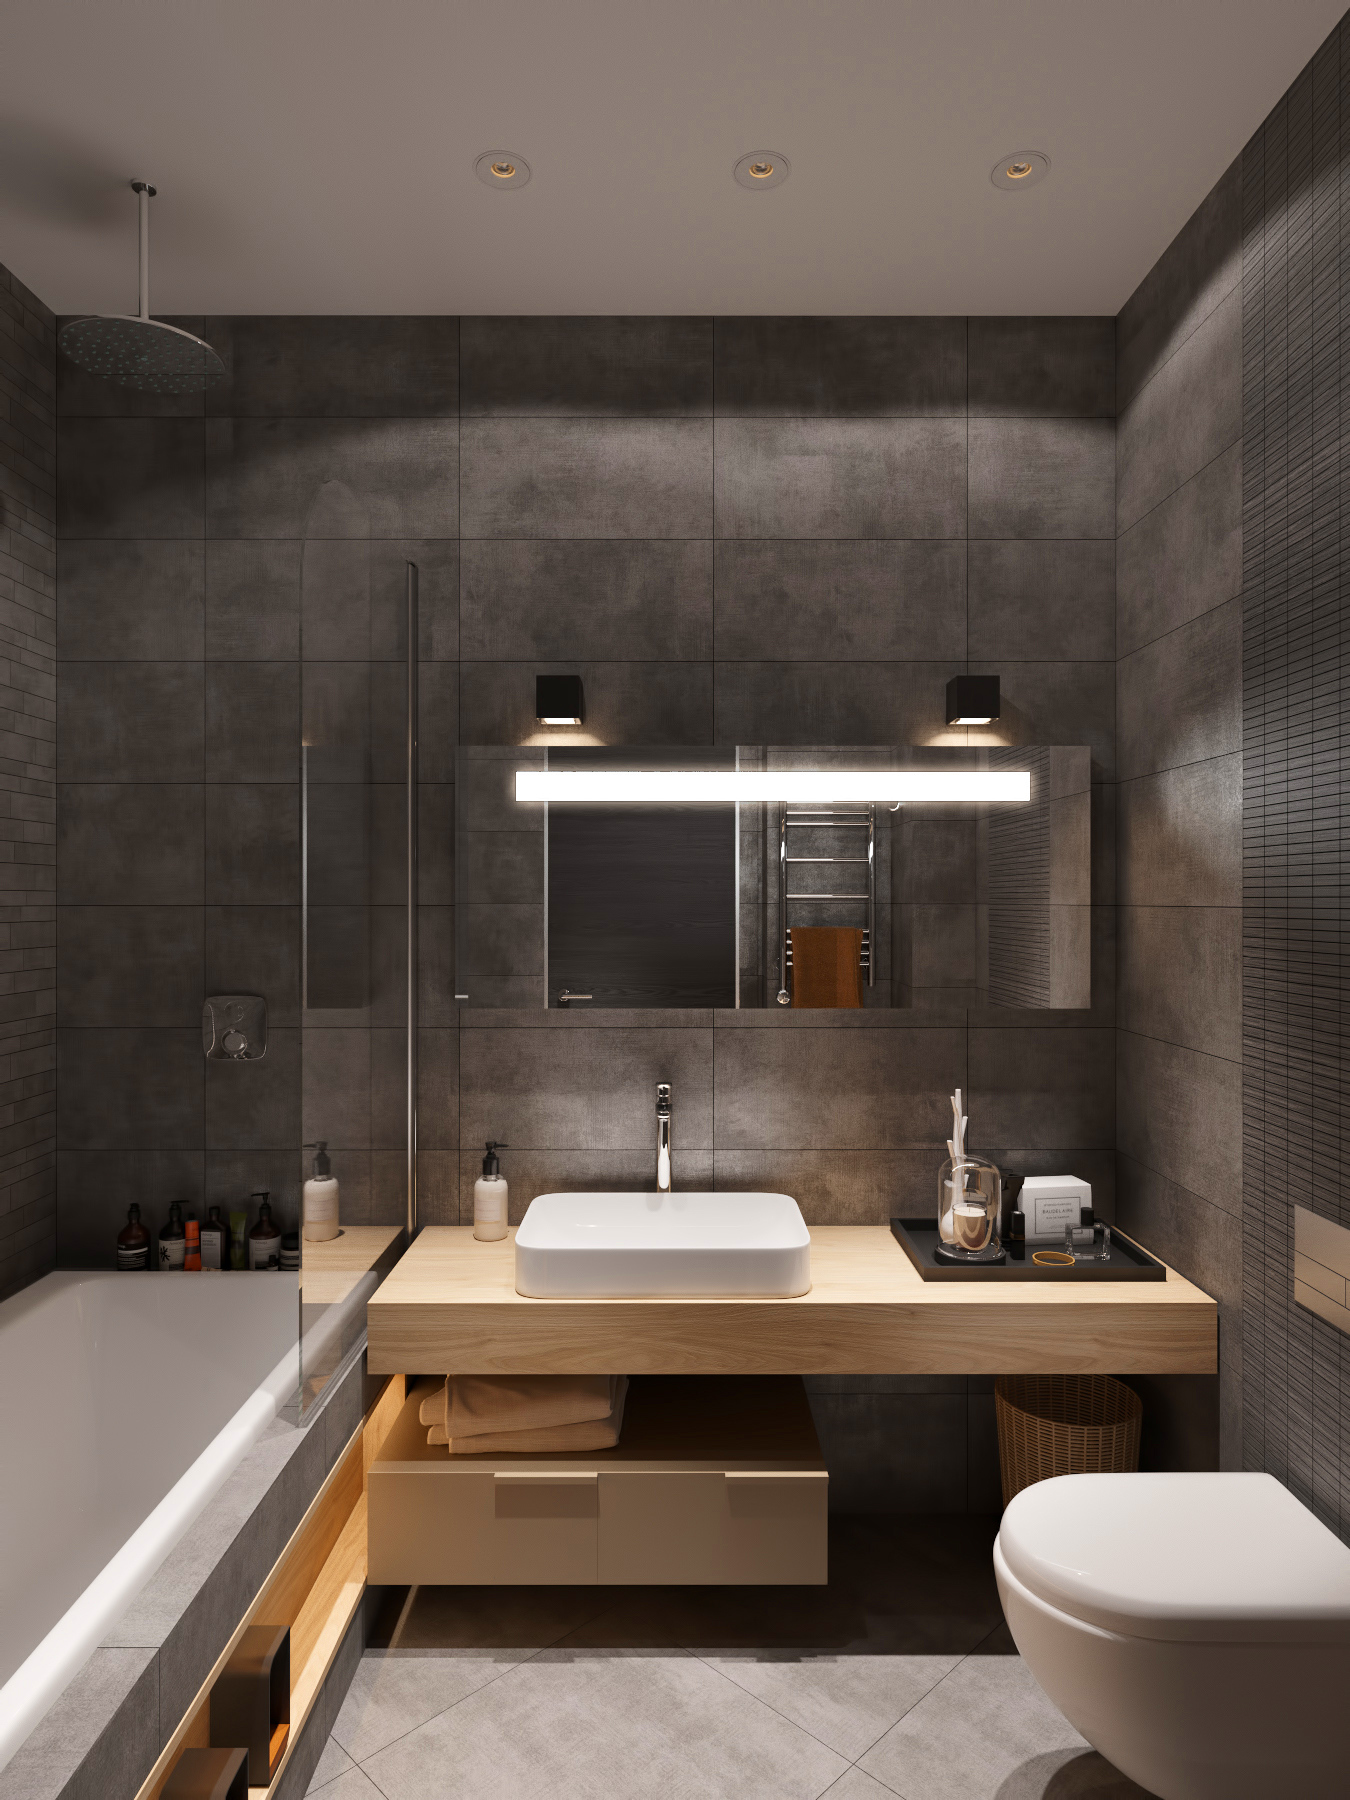 ванная комната 3 6 кв м дизайн